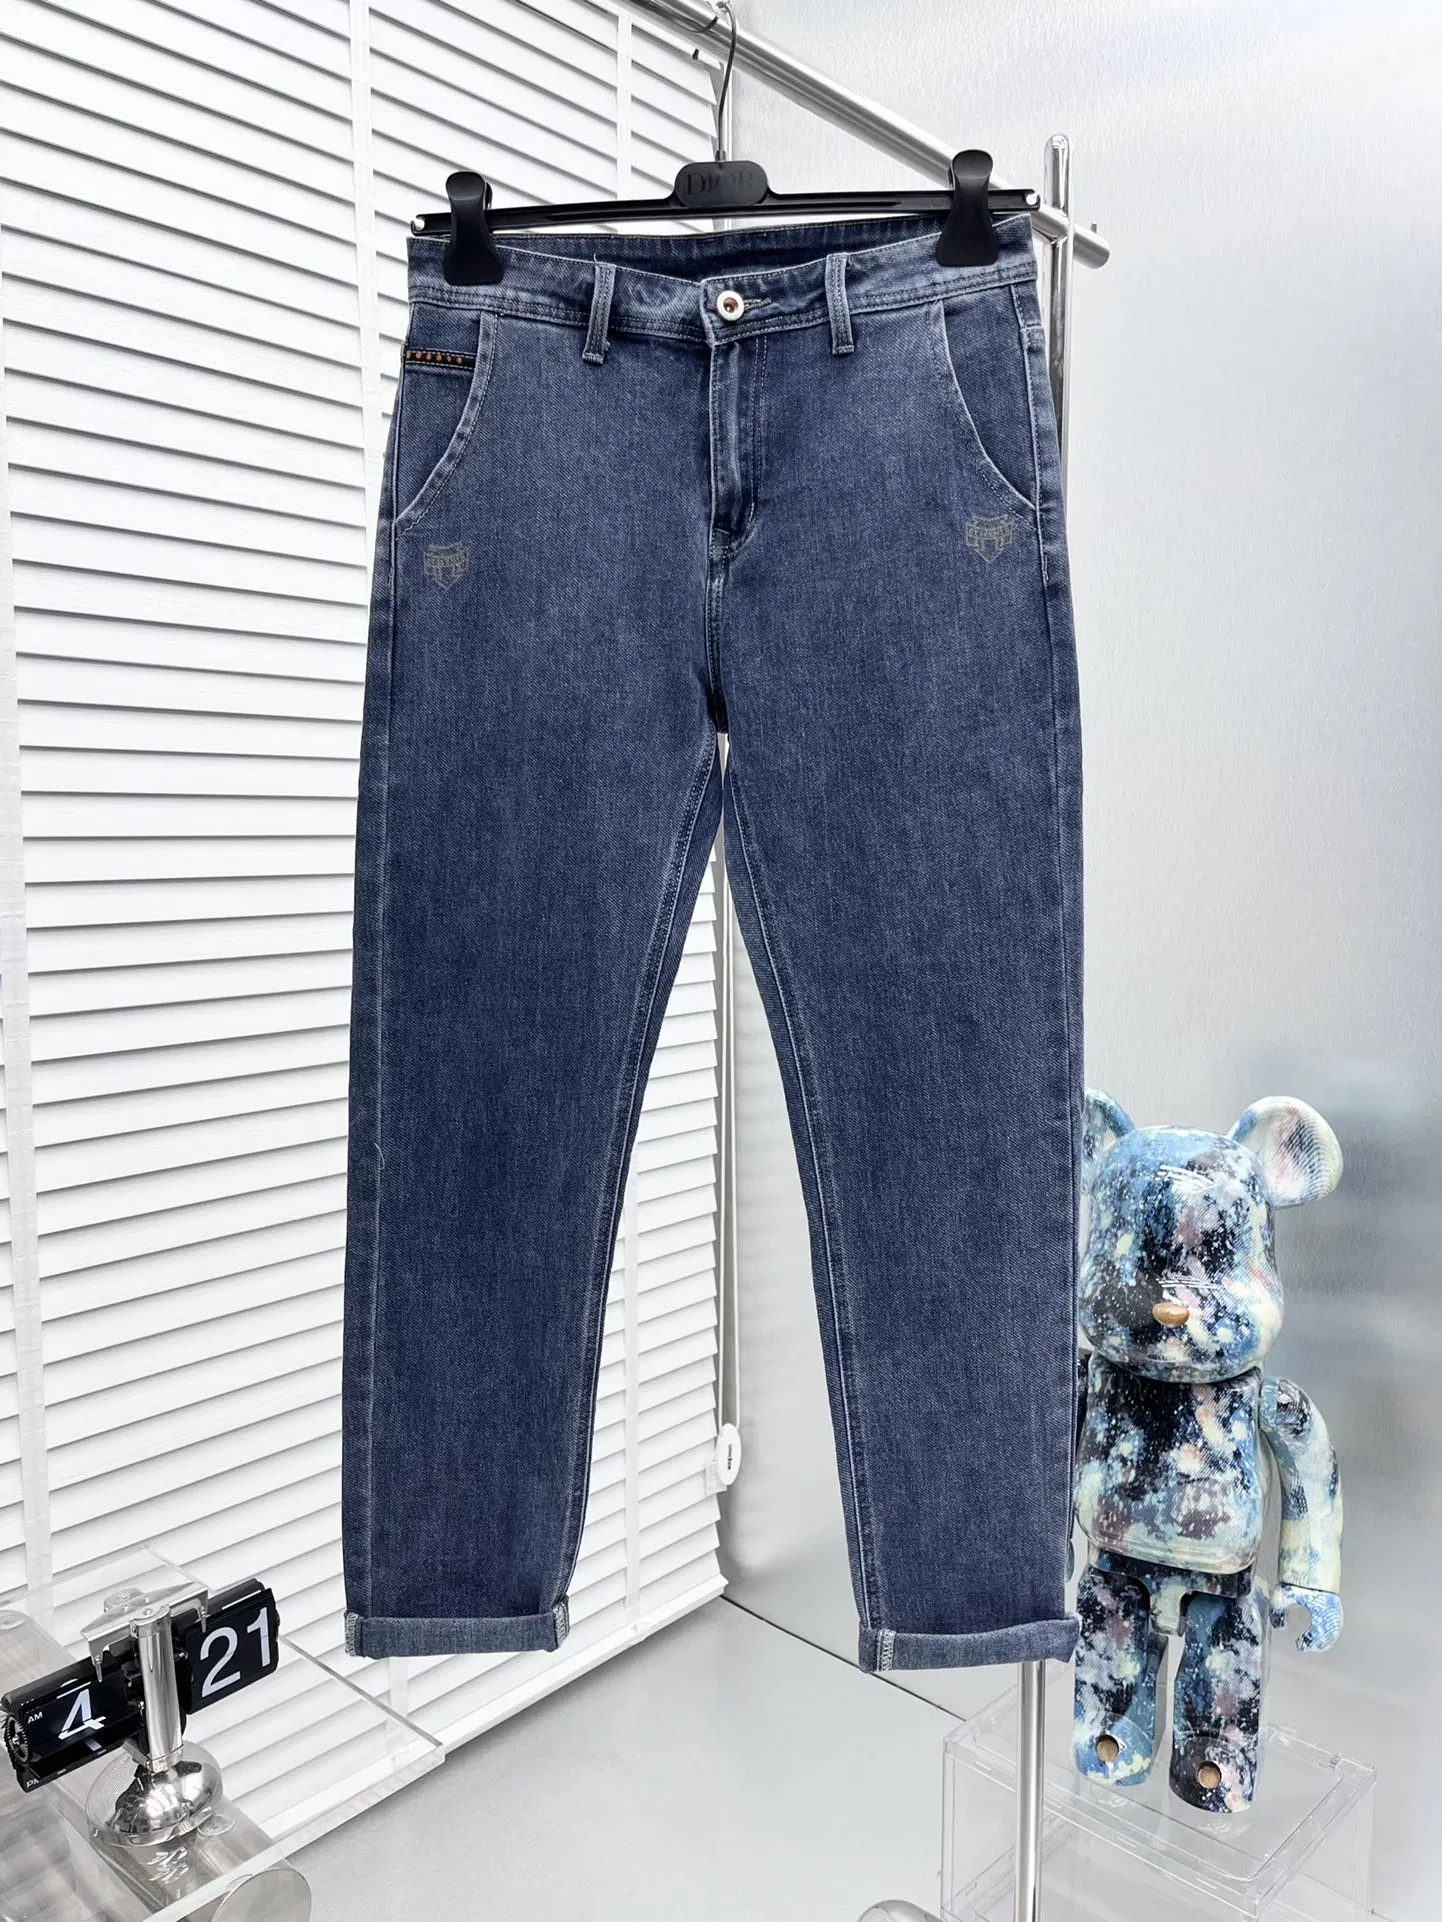 La impresión de logotipo de marca de lujo de mediados de la cintura recta gris Jeans mezclilla pantalones de hombre Descente pantalones prendas de vestir